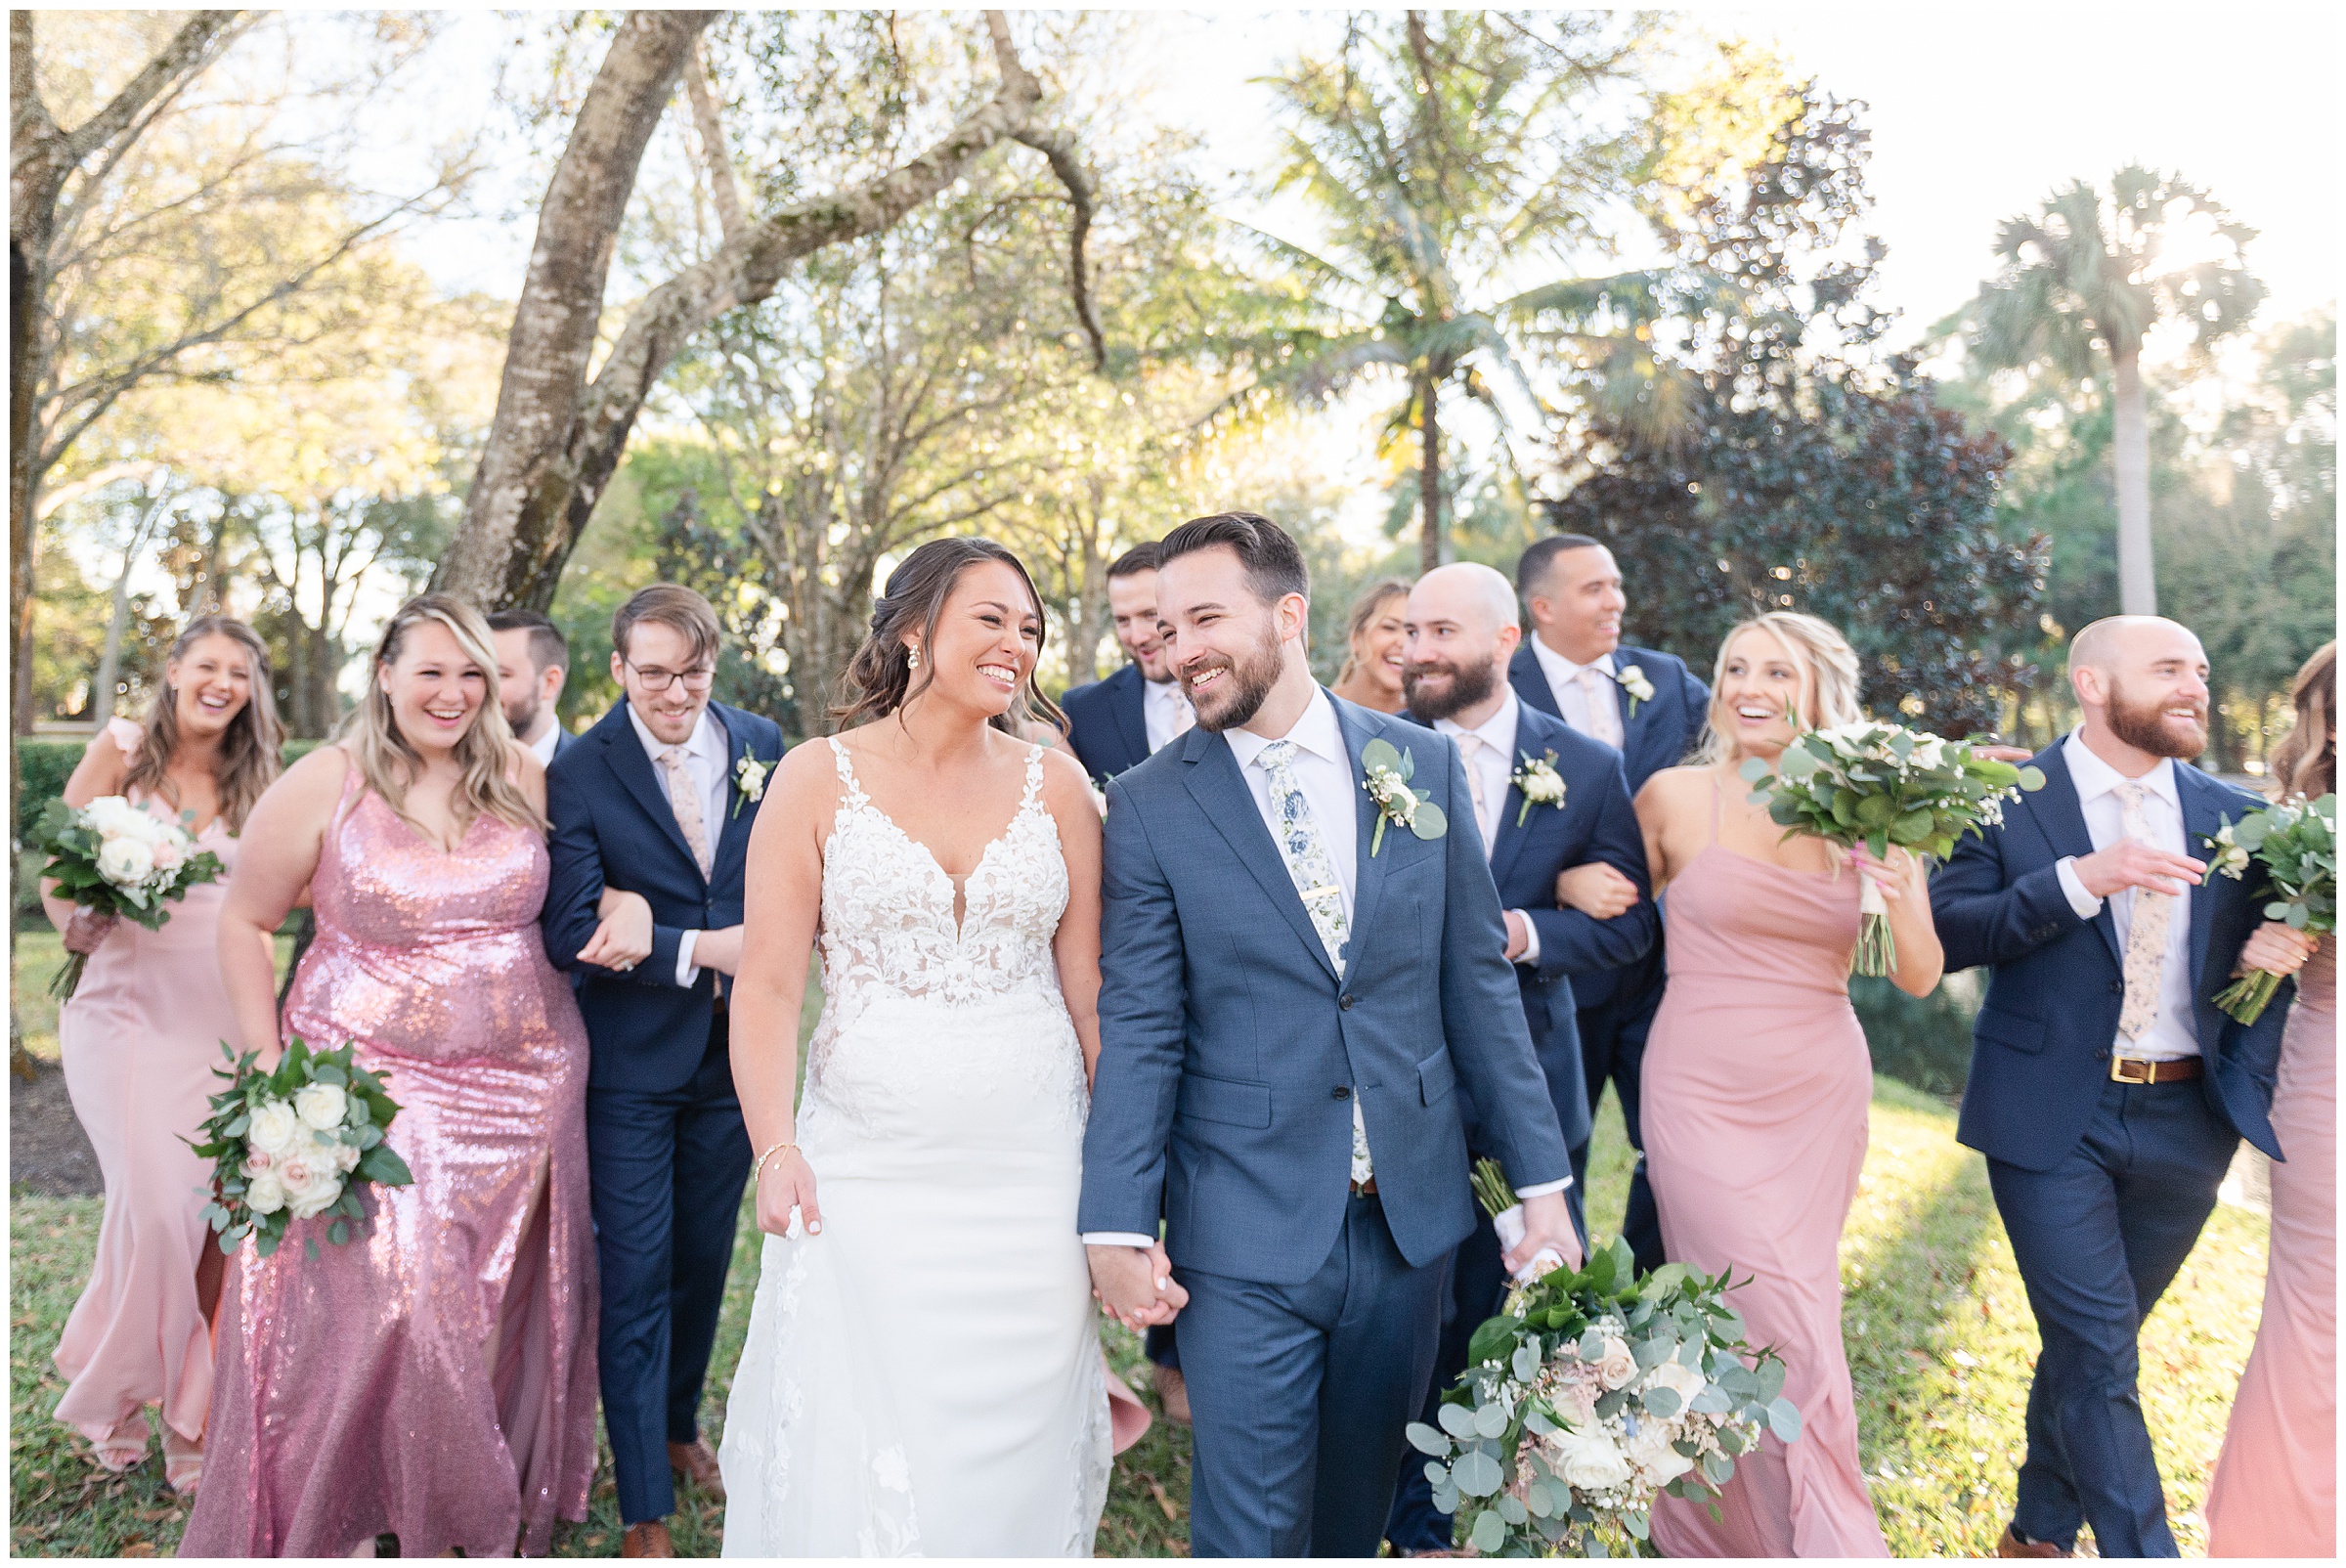 Bride and groom with bridal party photos | Magnolia Manor Wedding in Vero Beach